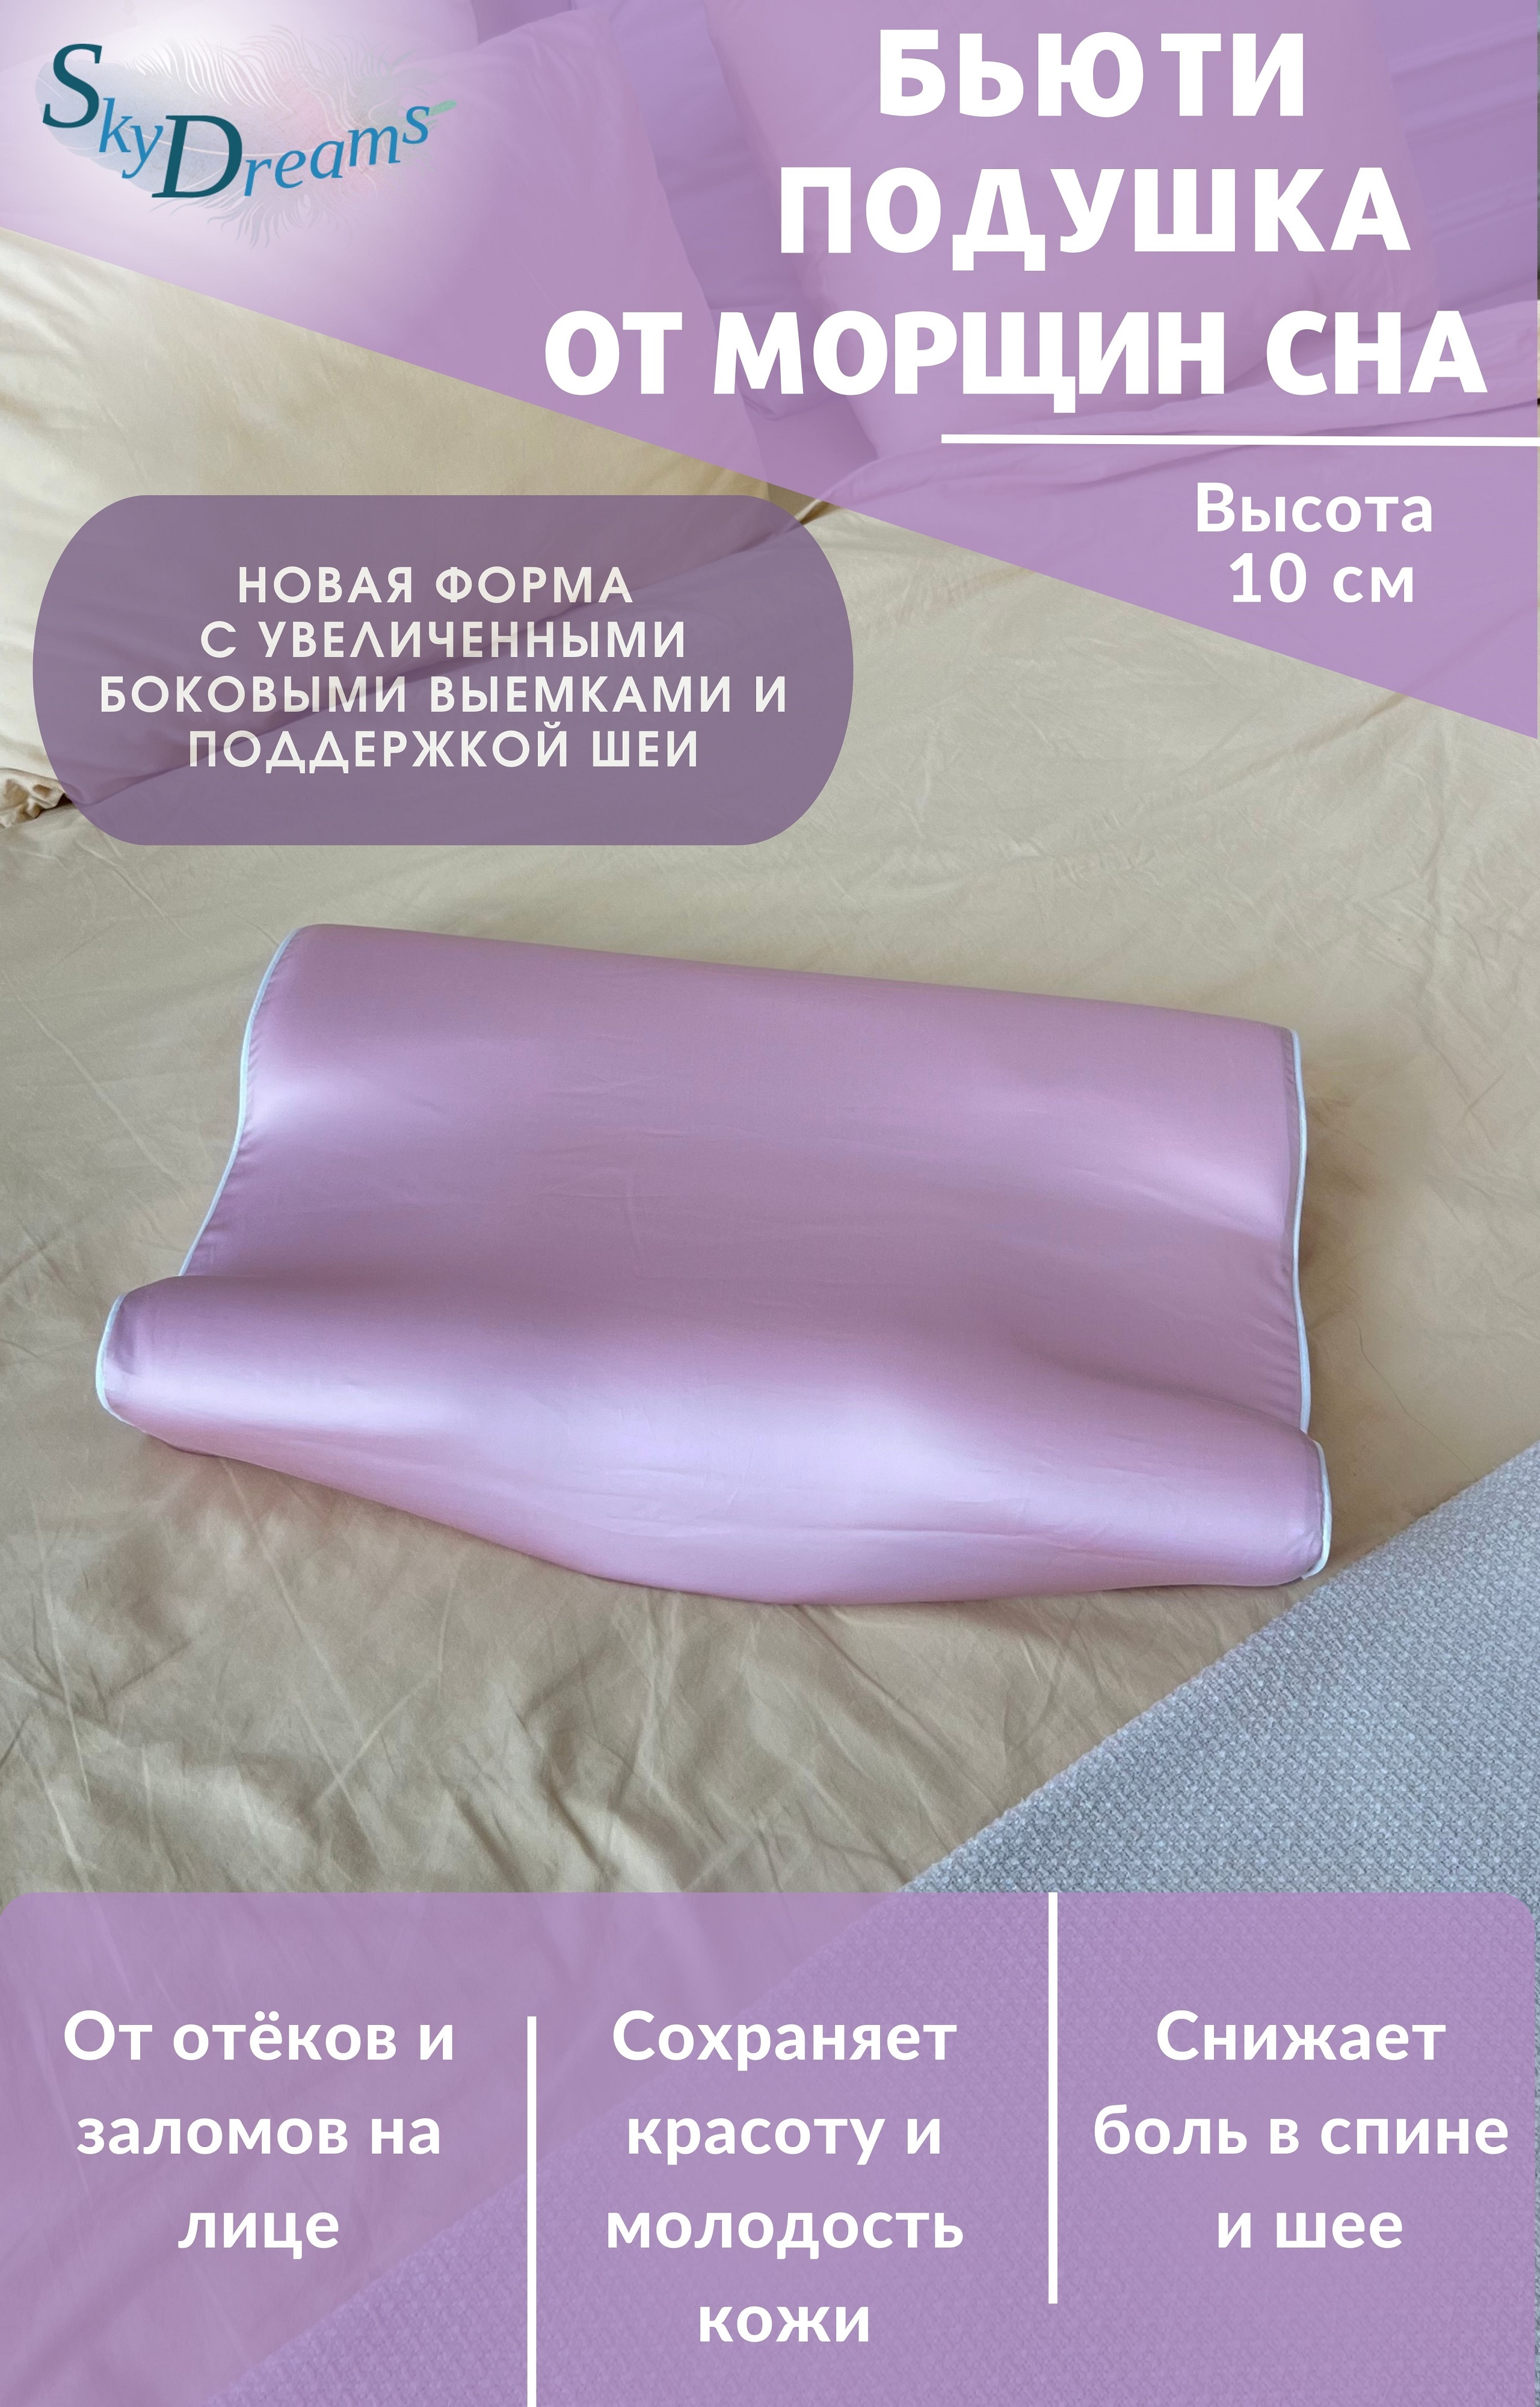 Ортопедическая бьюти подушка SkyDreams от морщин, 55х36х10 см, высота 10см, розовый